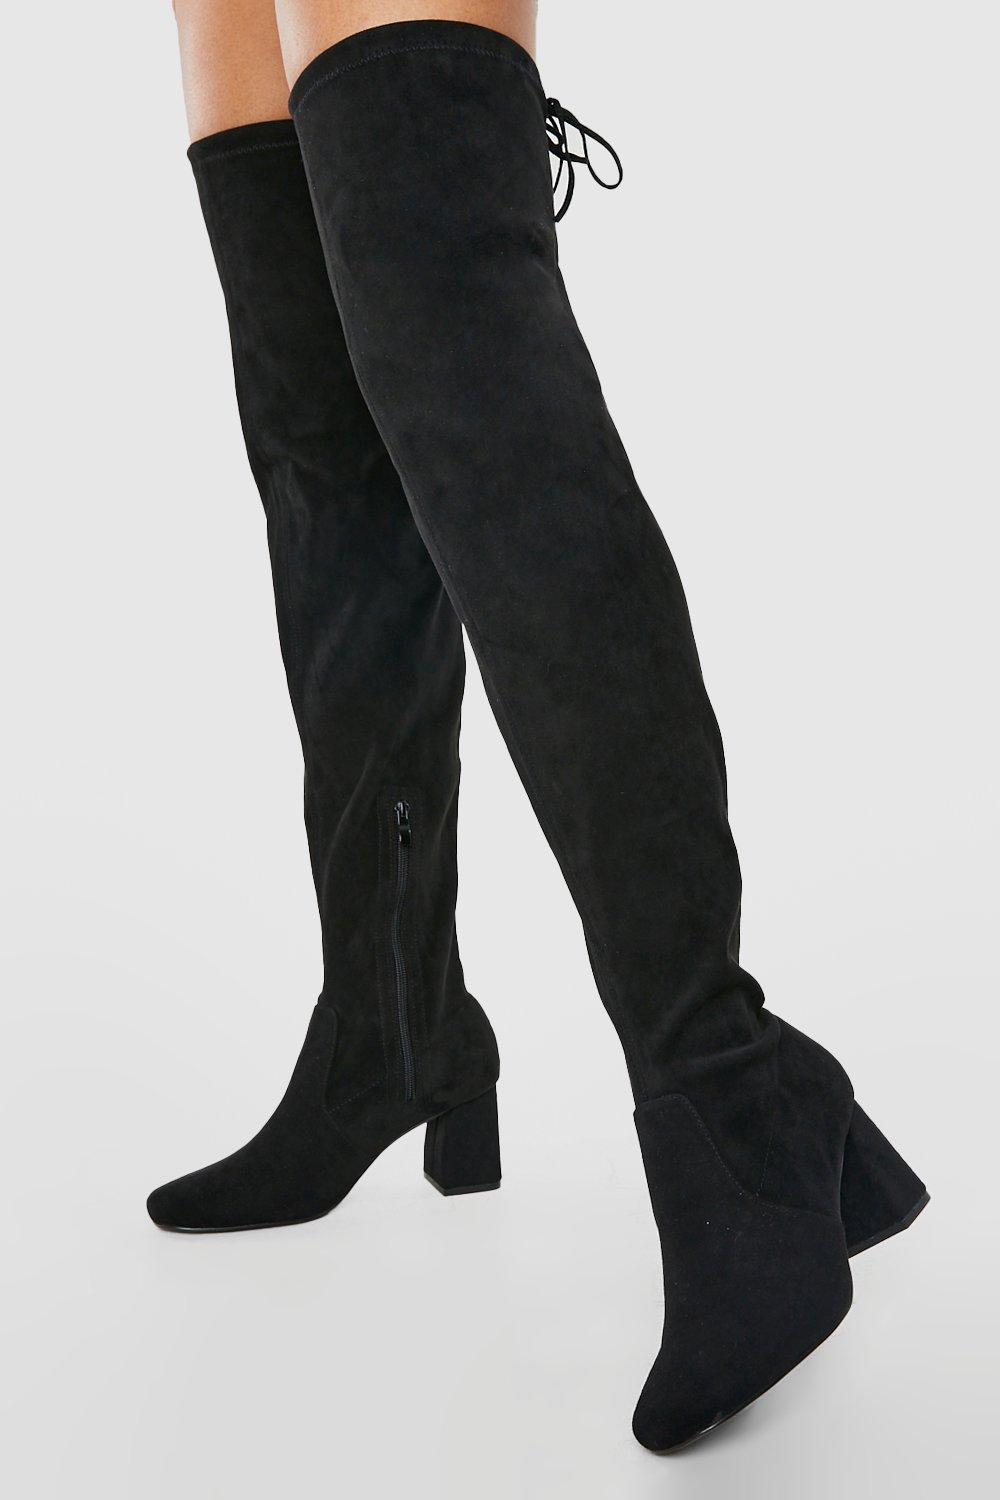 Image of Stivali sopra il ginocchio a calzata ampia con tacco a blocco, Nero